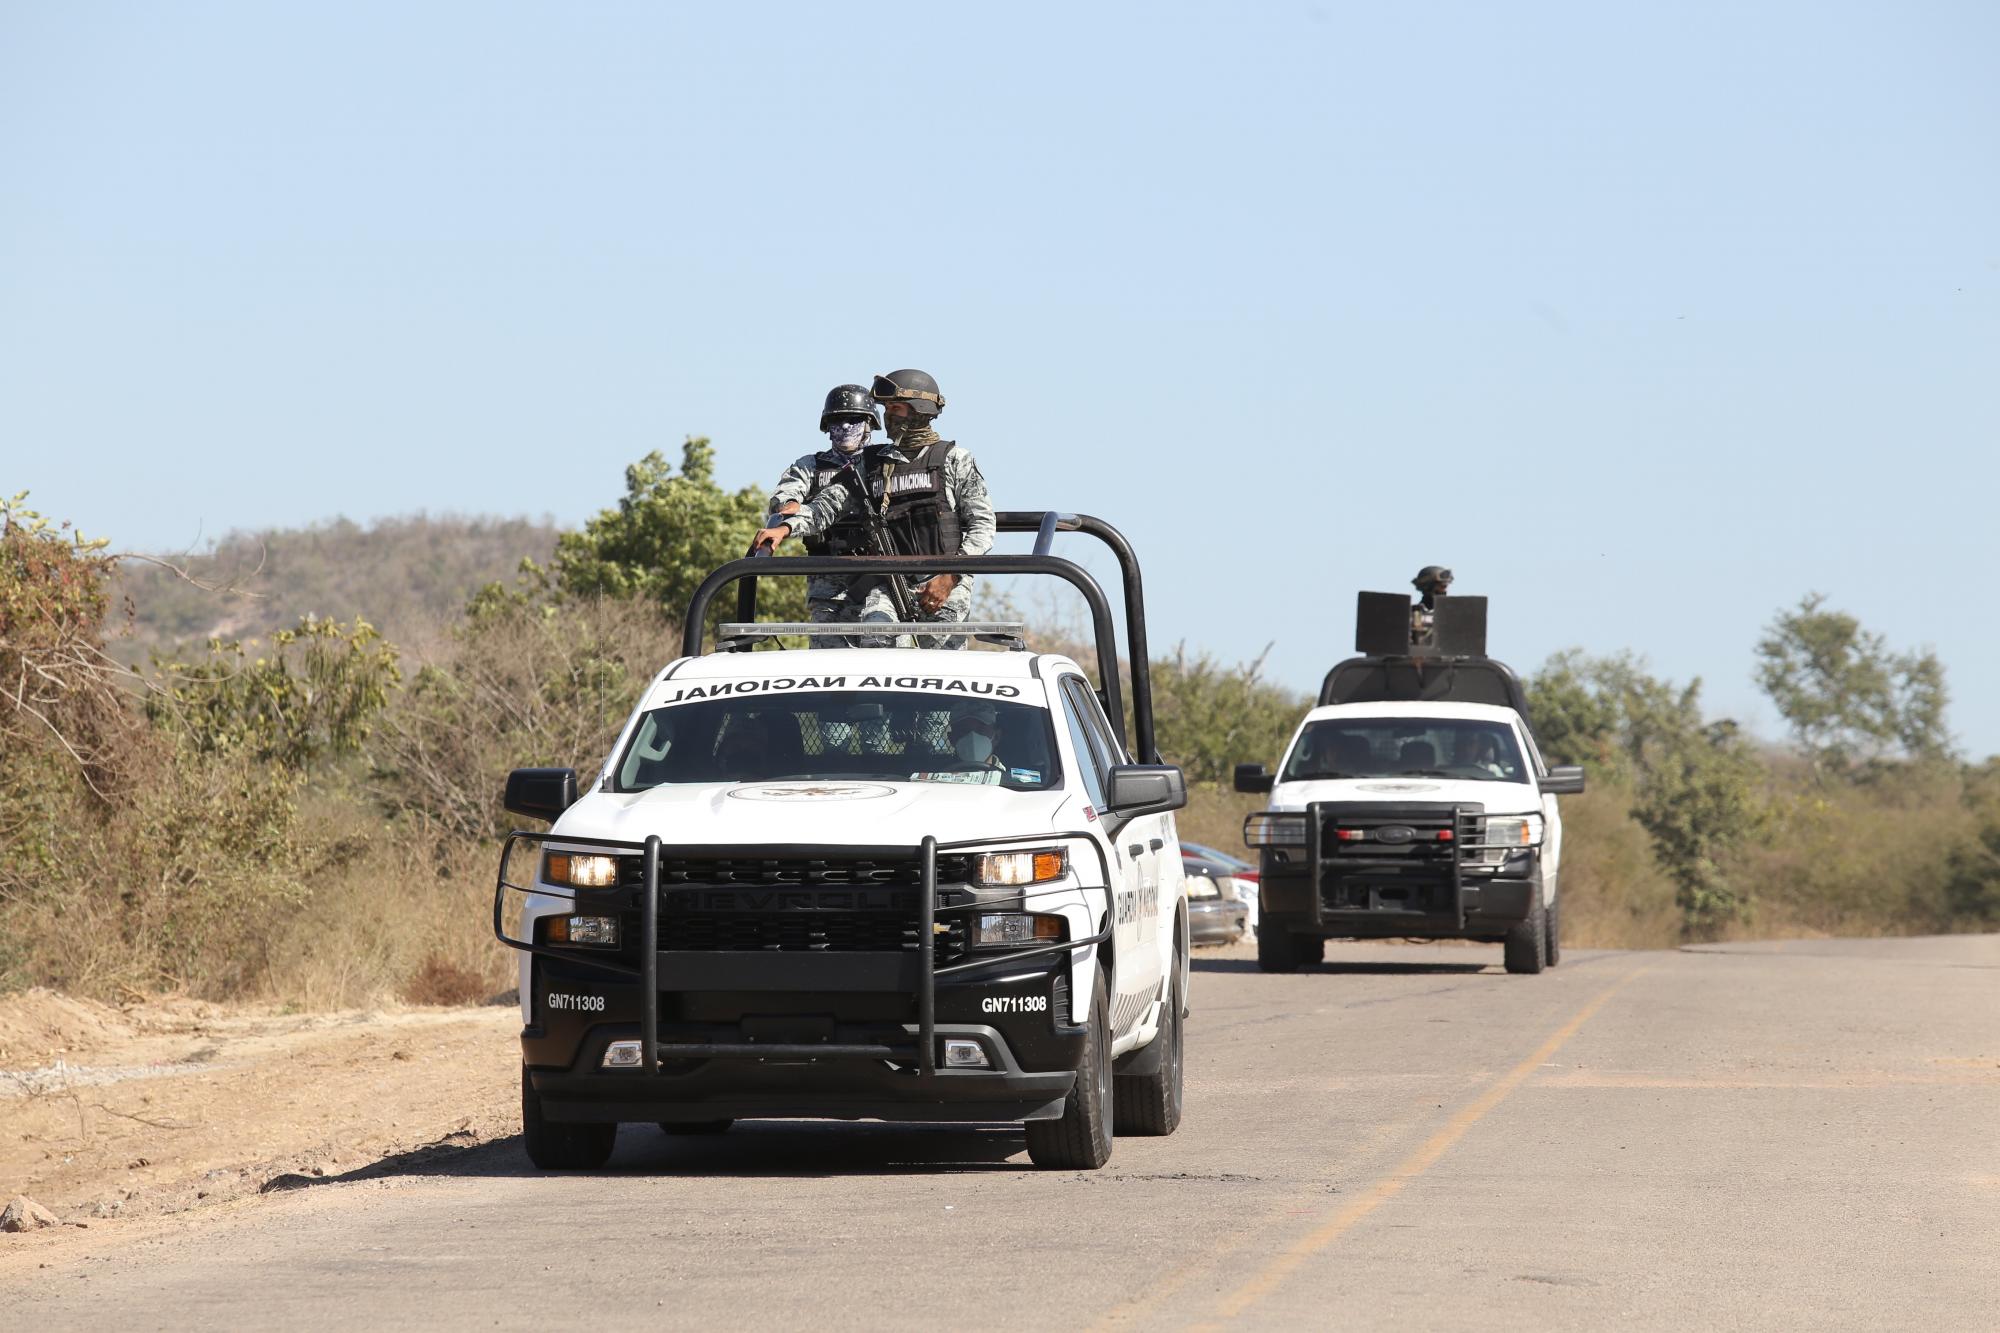 $!Aún con la Guardia Nacional en Sinaloa, las desapariciones superan a los asesinatos